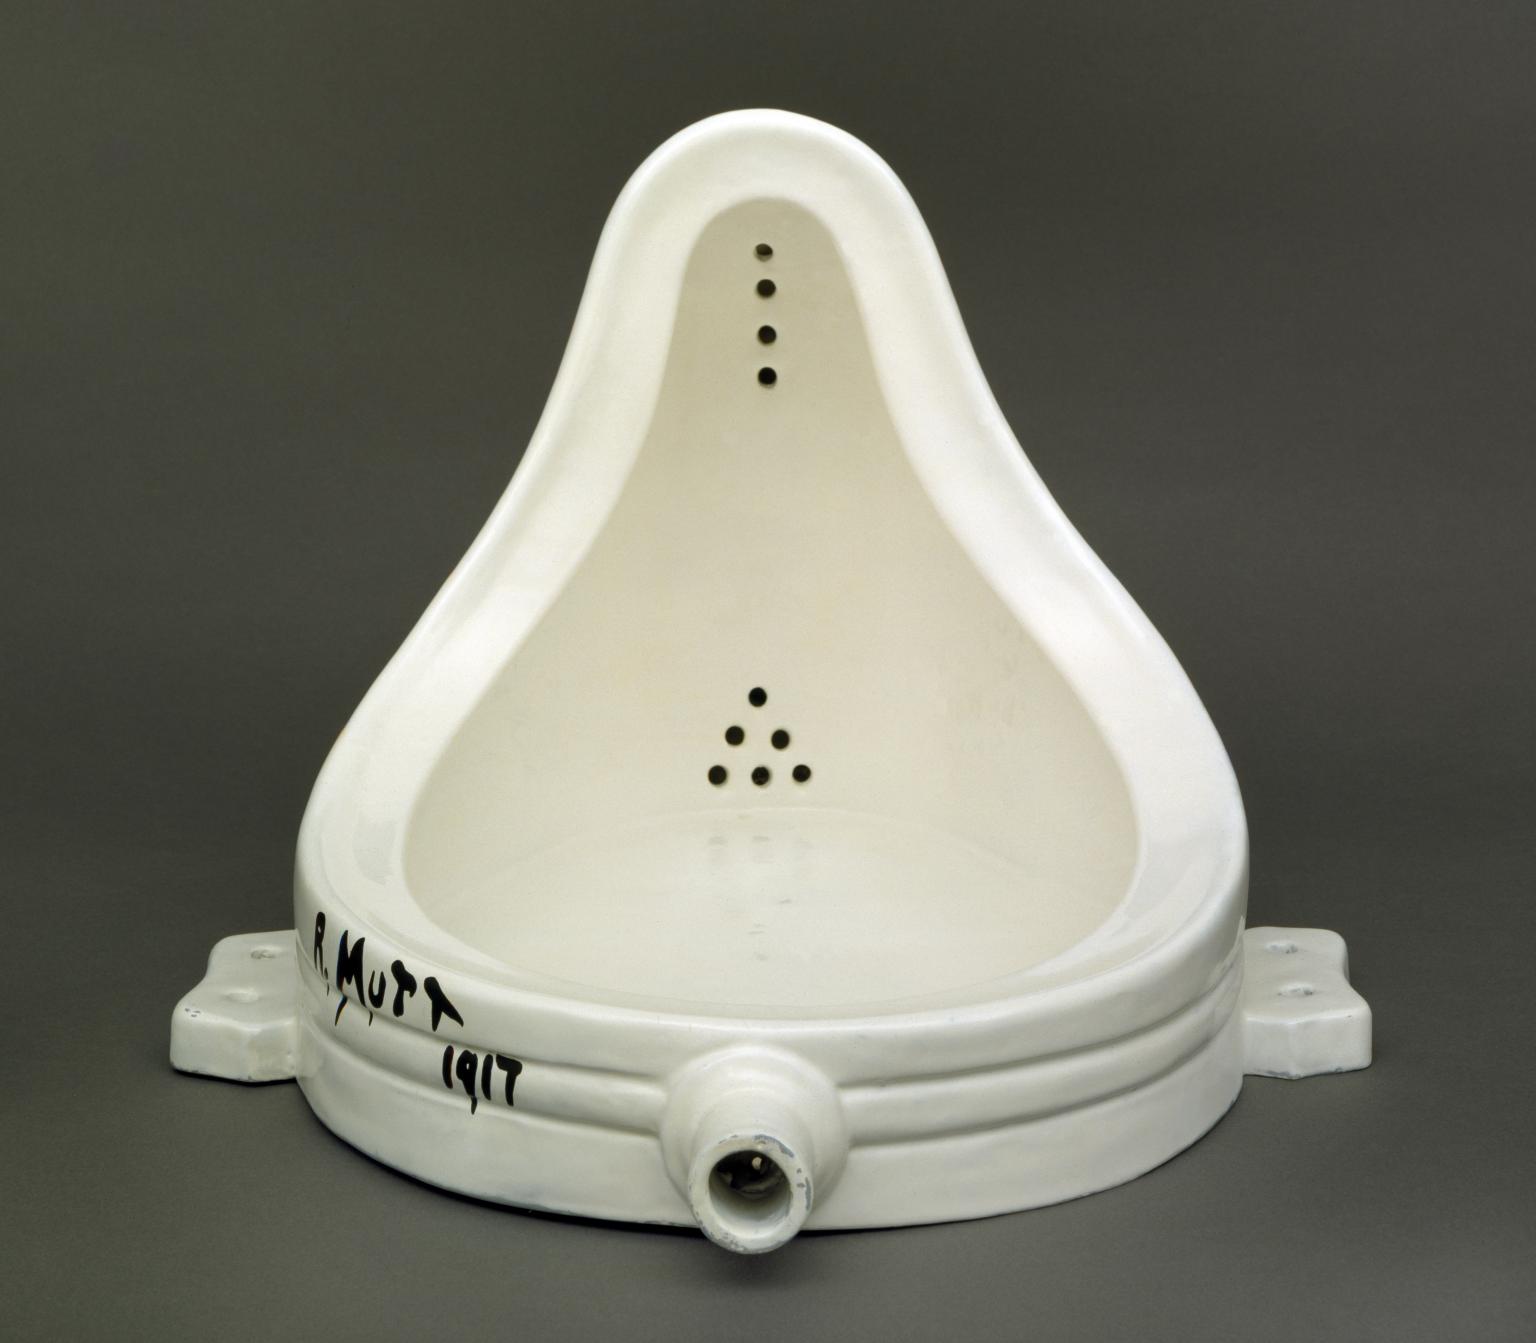 Marcel Duchamp, Fountain, 1917–1917, ceramic